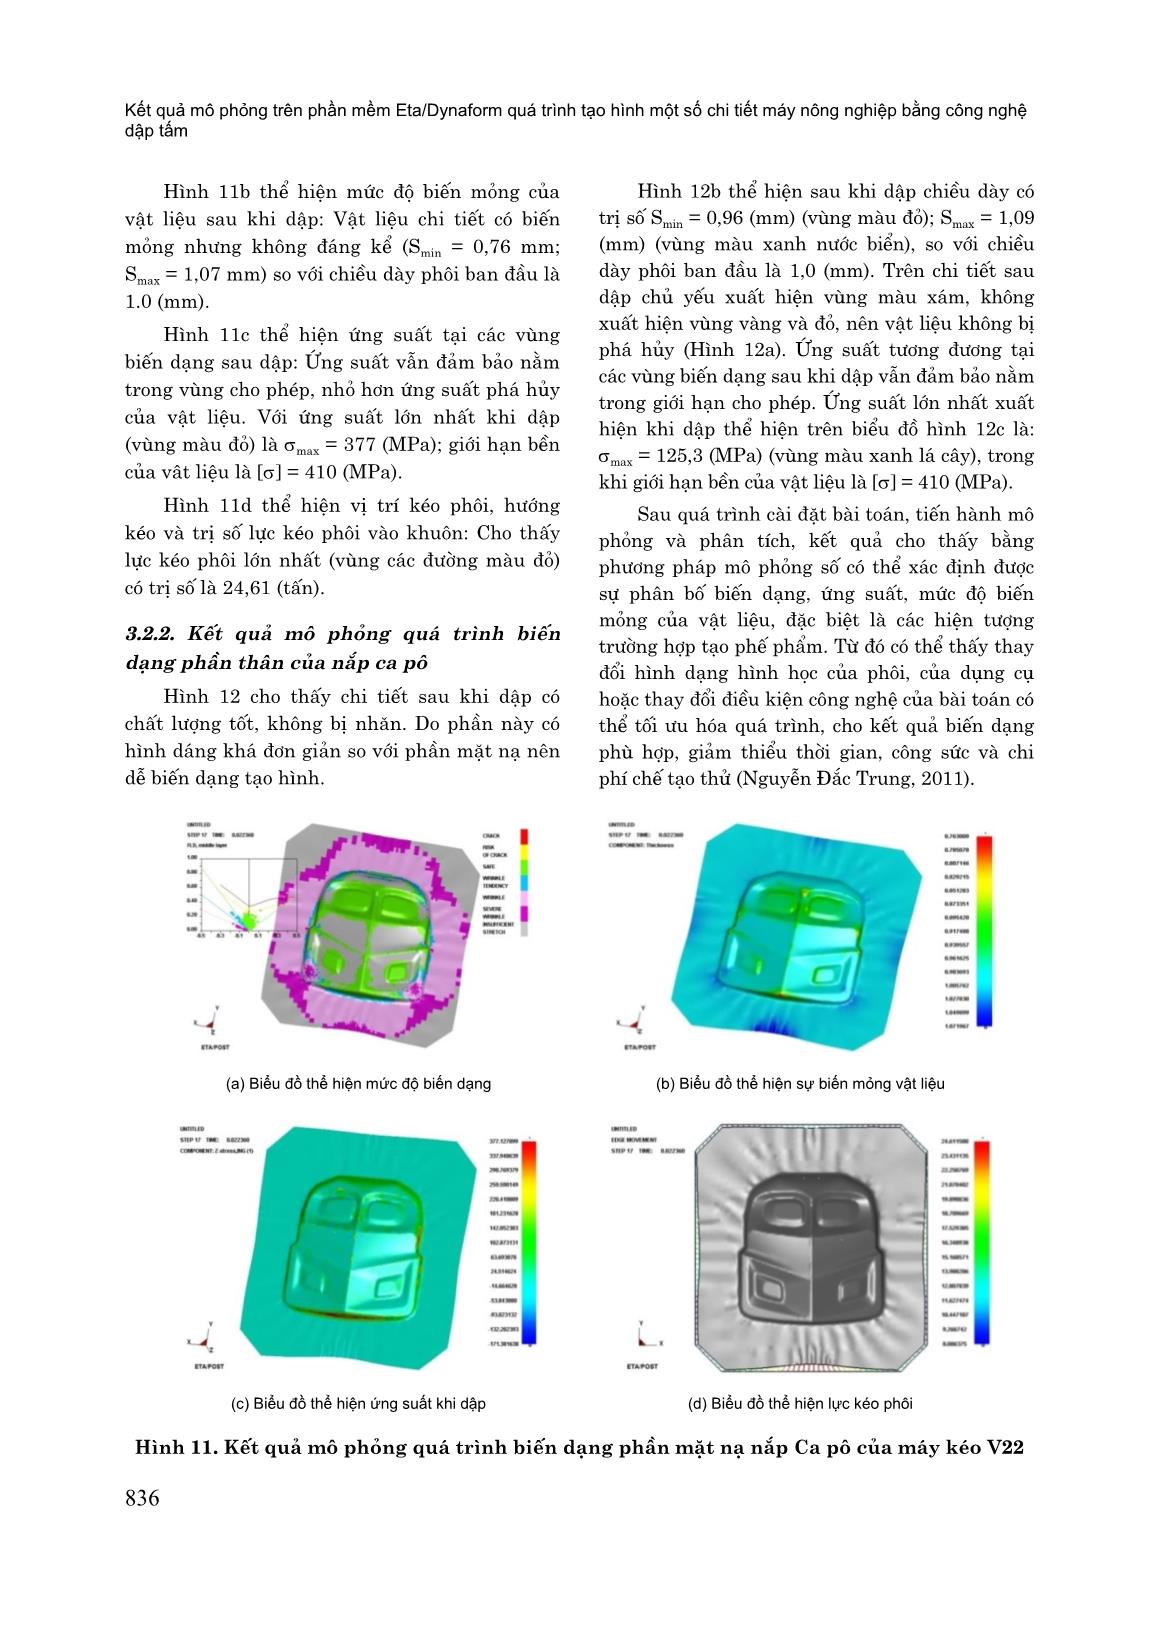 Kết quả mô phỏng trên phần mềm Eta/Dynaform quá trình tạo hình một số chi tiết máy nông nghiệp bằng công nghệ dập tấm trang 7